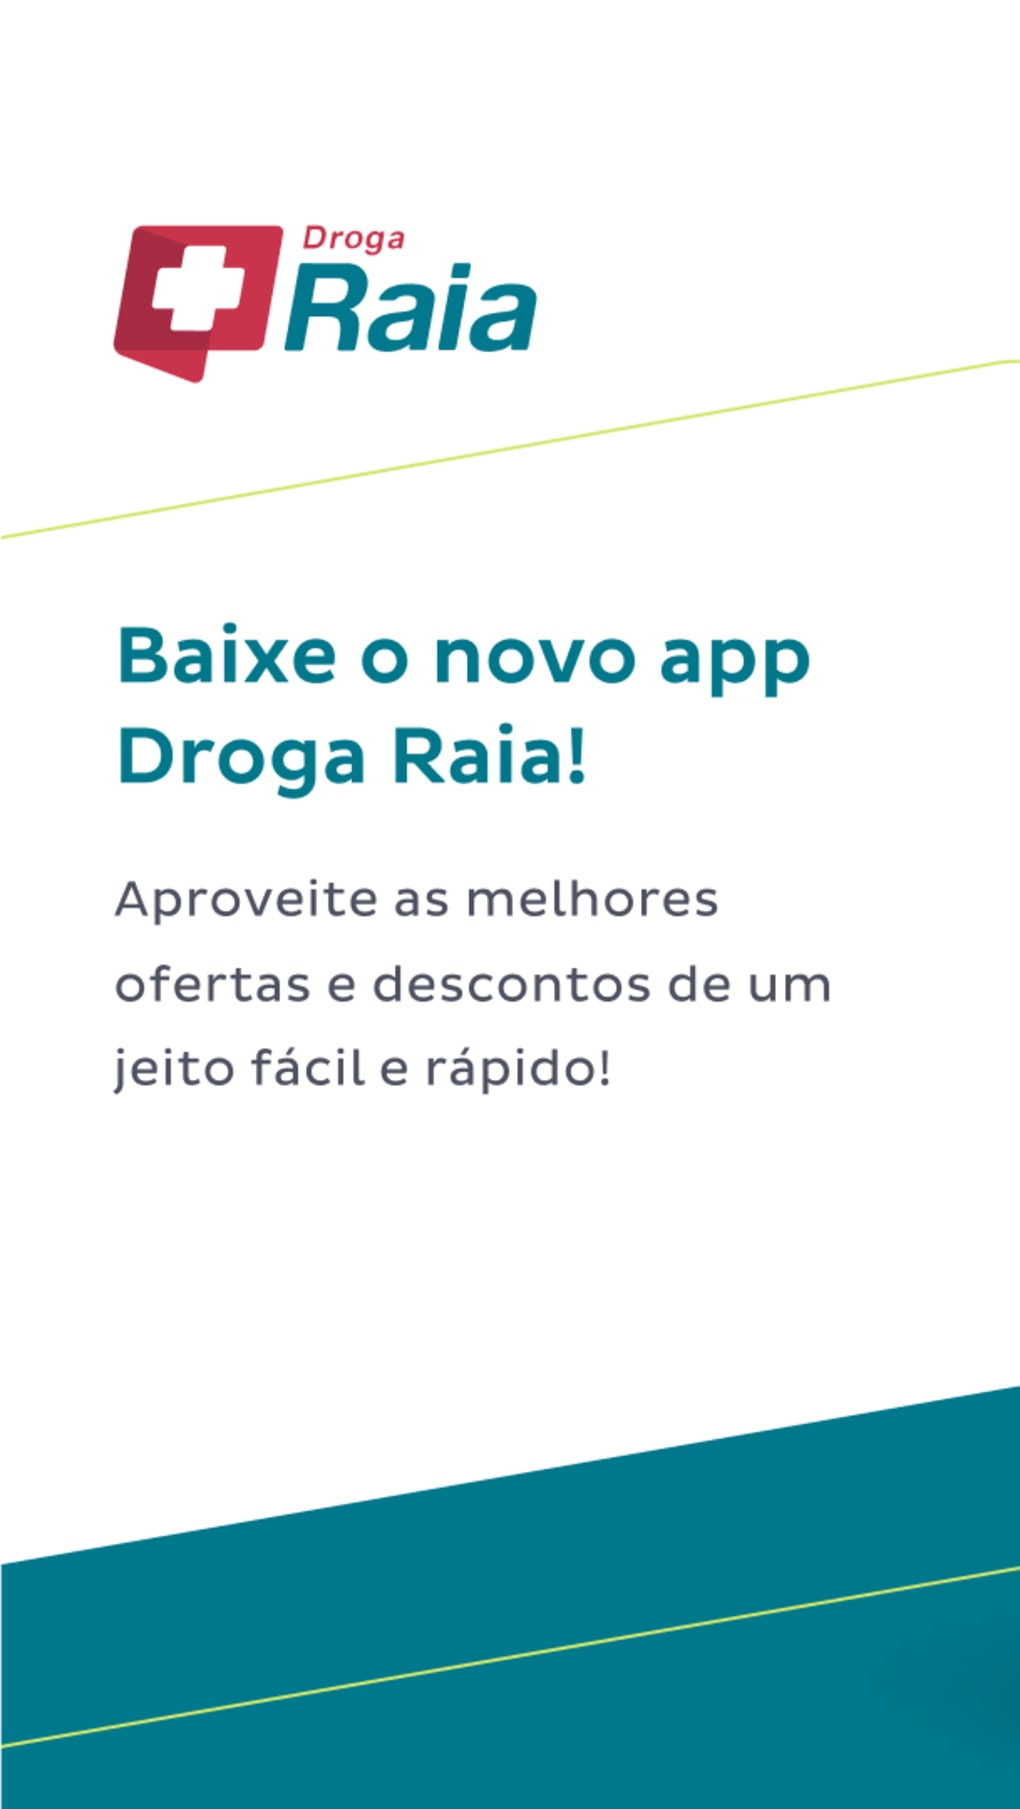 Droga Raia - Farmácia 24 horas – Apps on Google Play